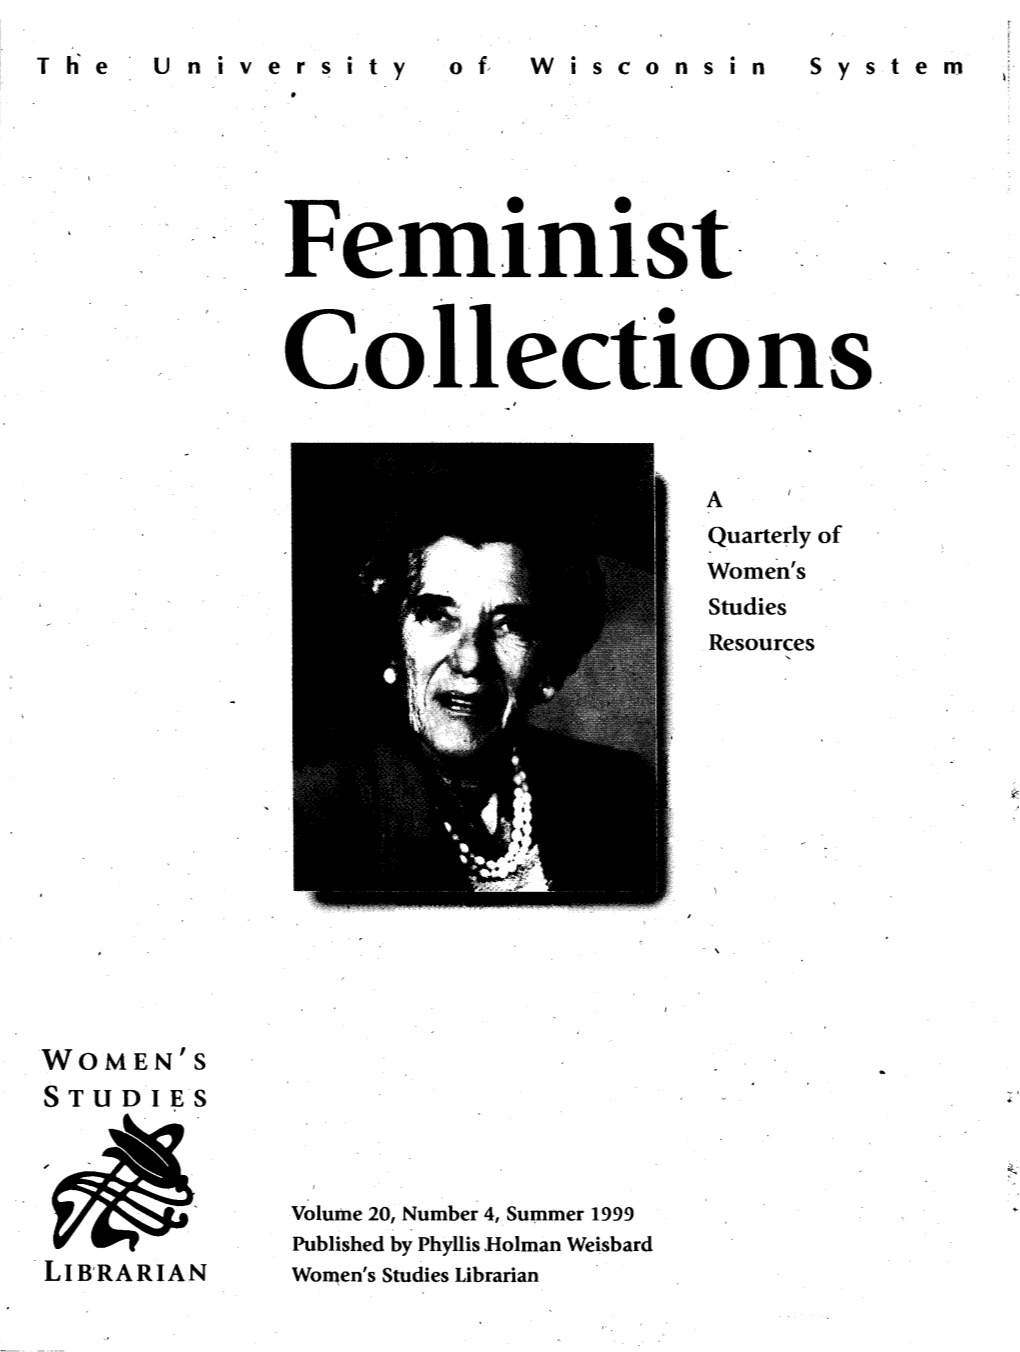 LIB'rarian Woqen's Studies Librarian , ., a ~Uarter$ of Women's Studies